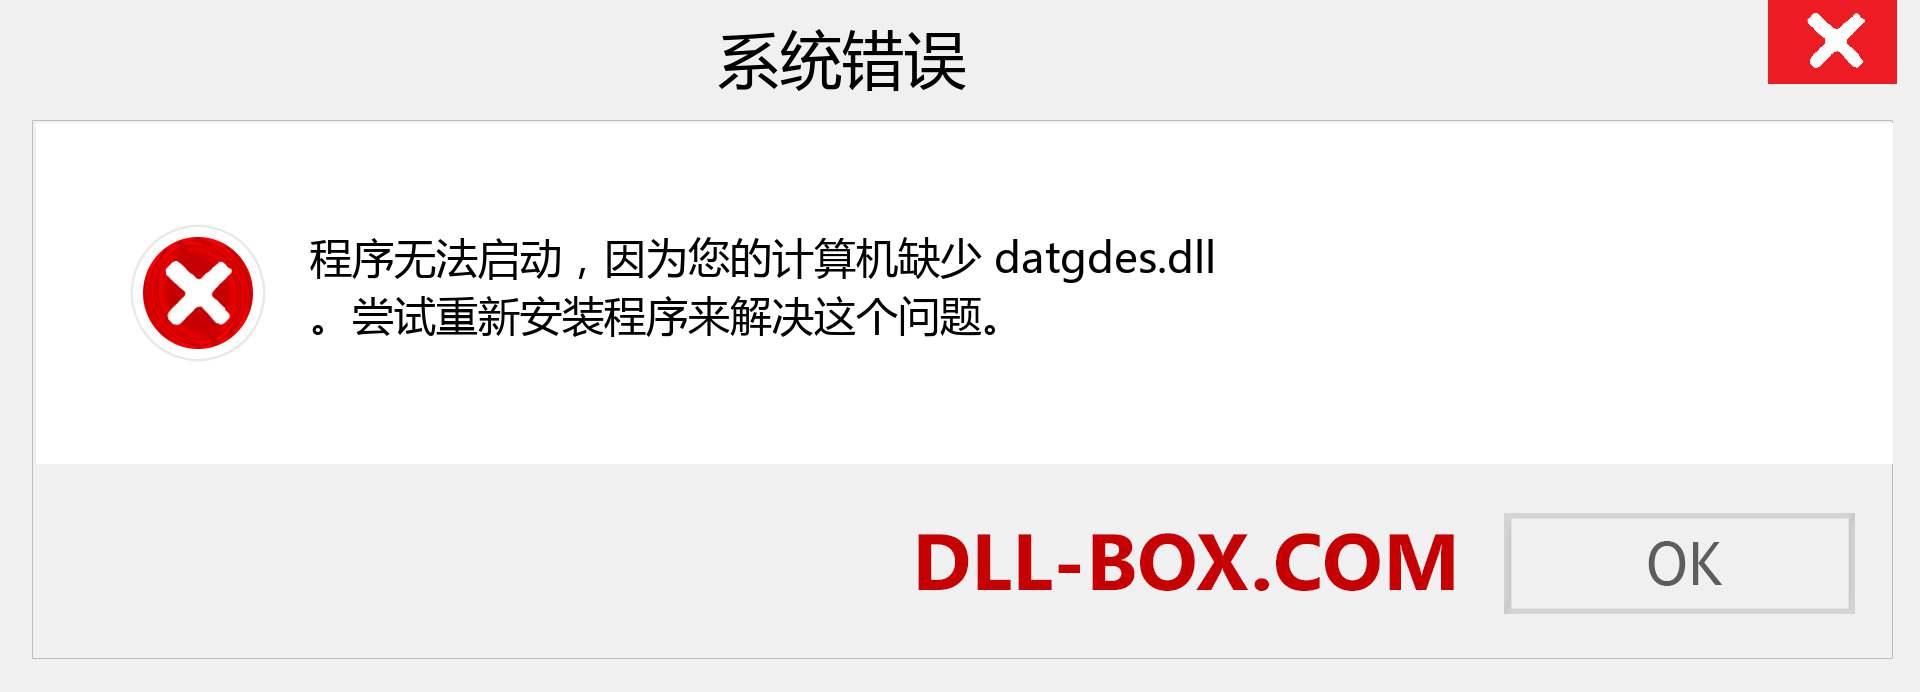 datgdes.dll 文件丢失？。 适用于 Windows 7、8、10 的下载 - 修复 Windows、照片、图像上的 datgdes dll 丢失错误